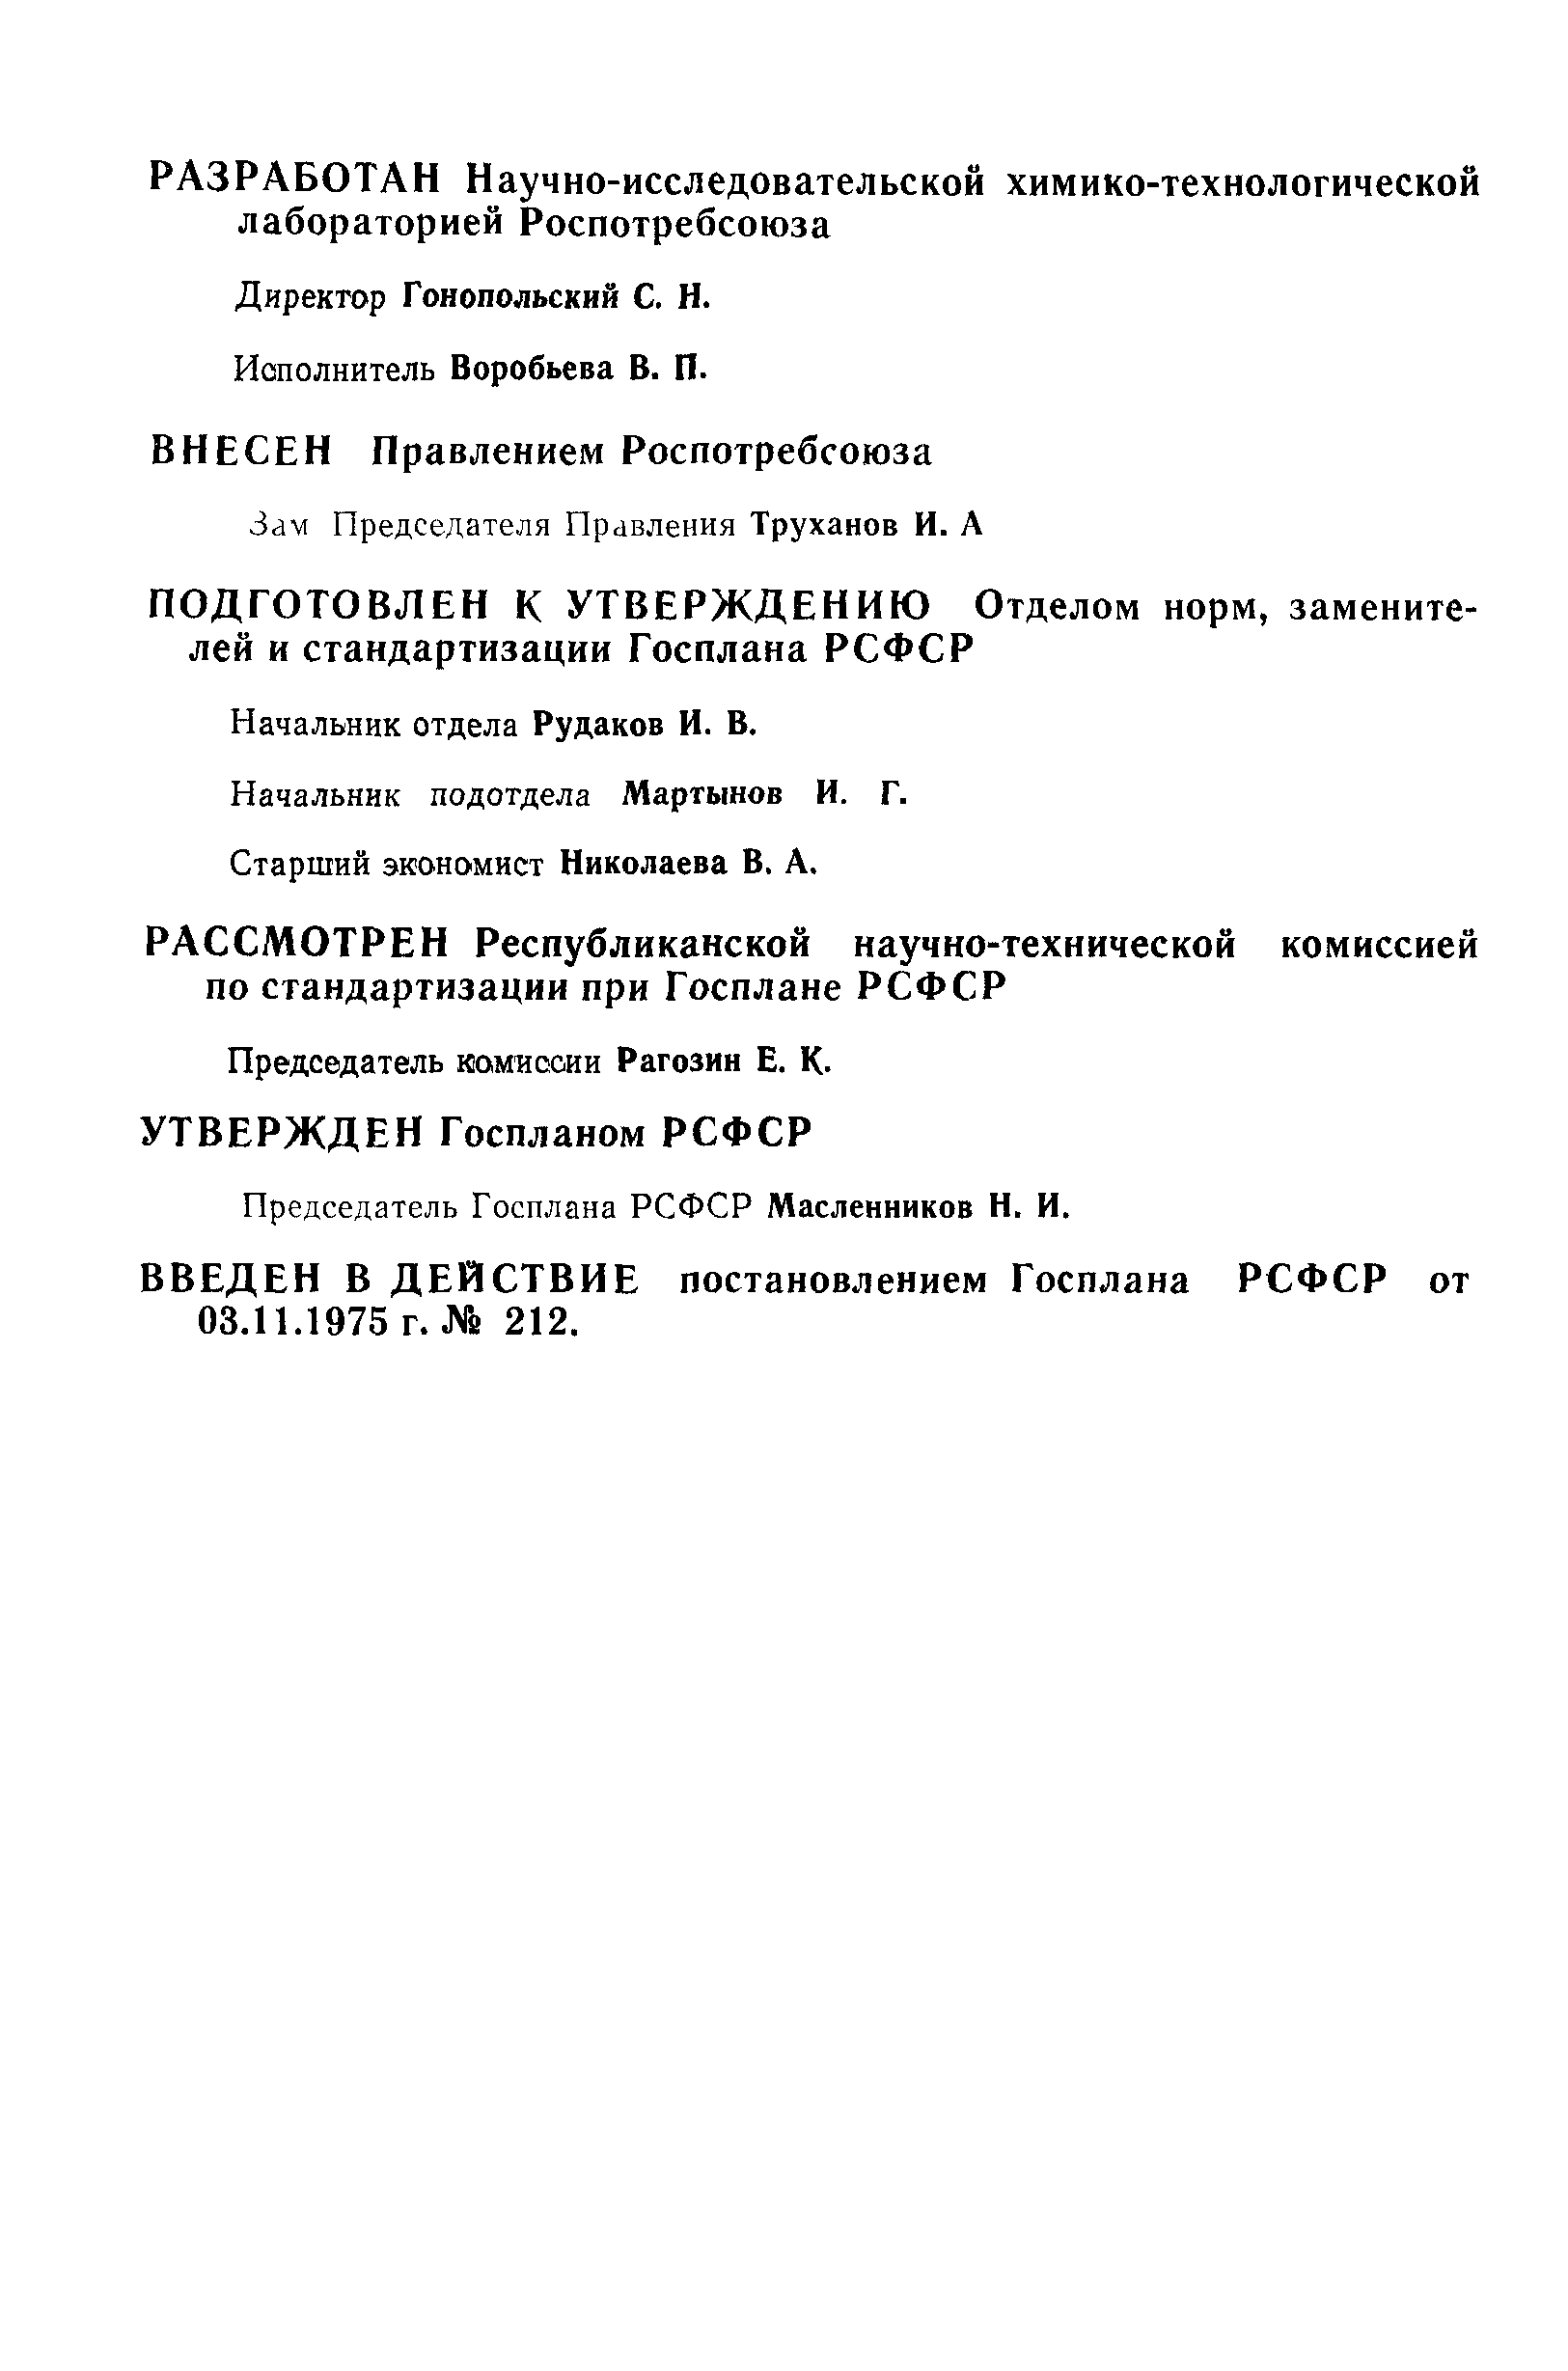 РСТ РСФСР 19-75